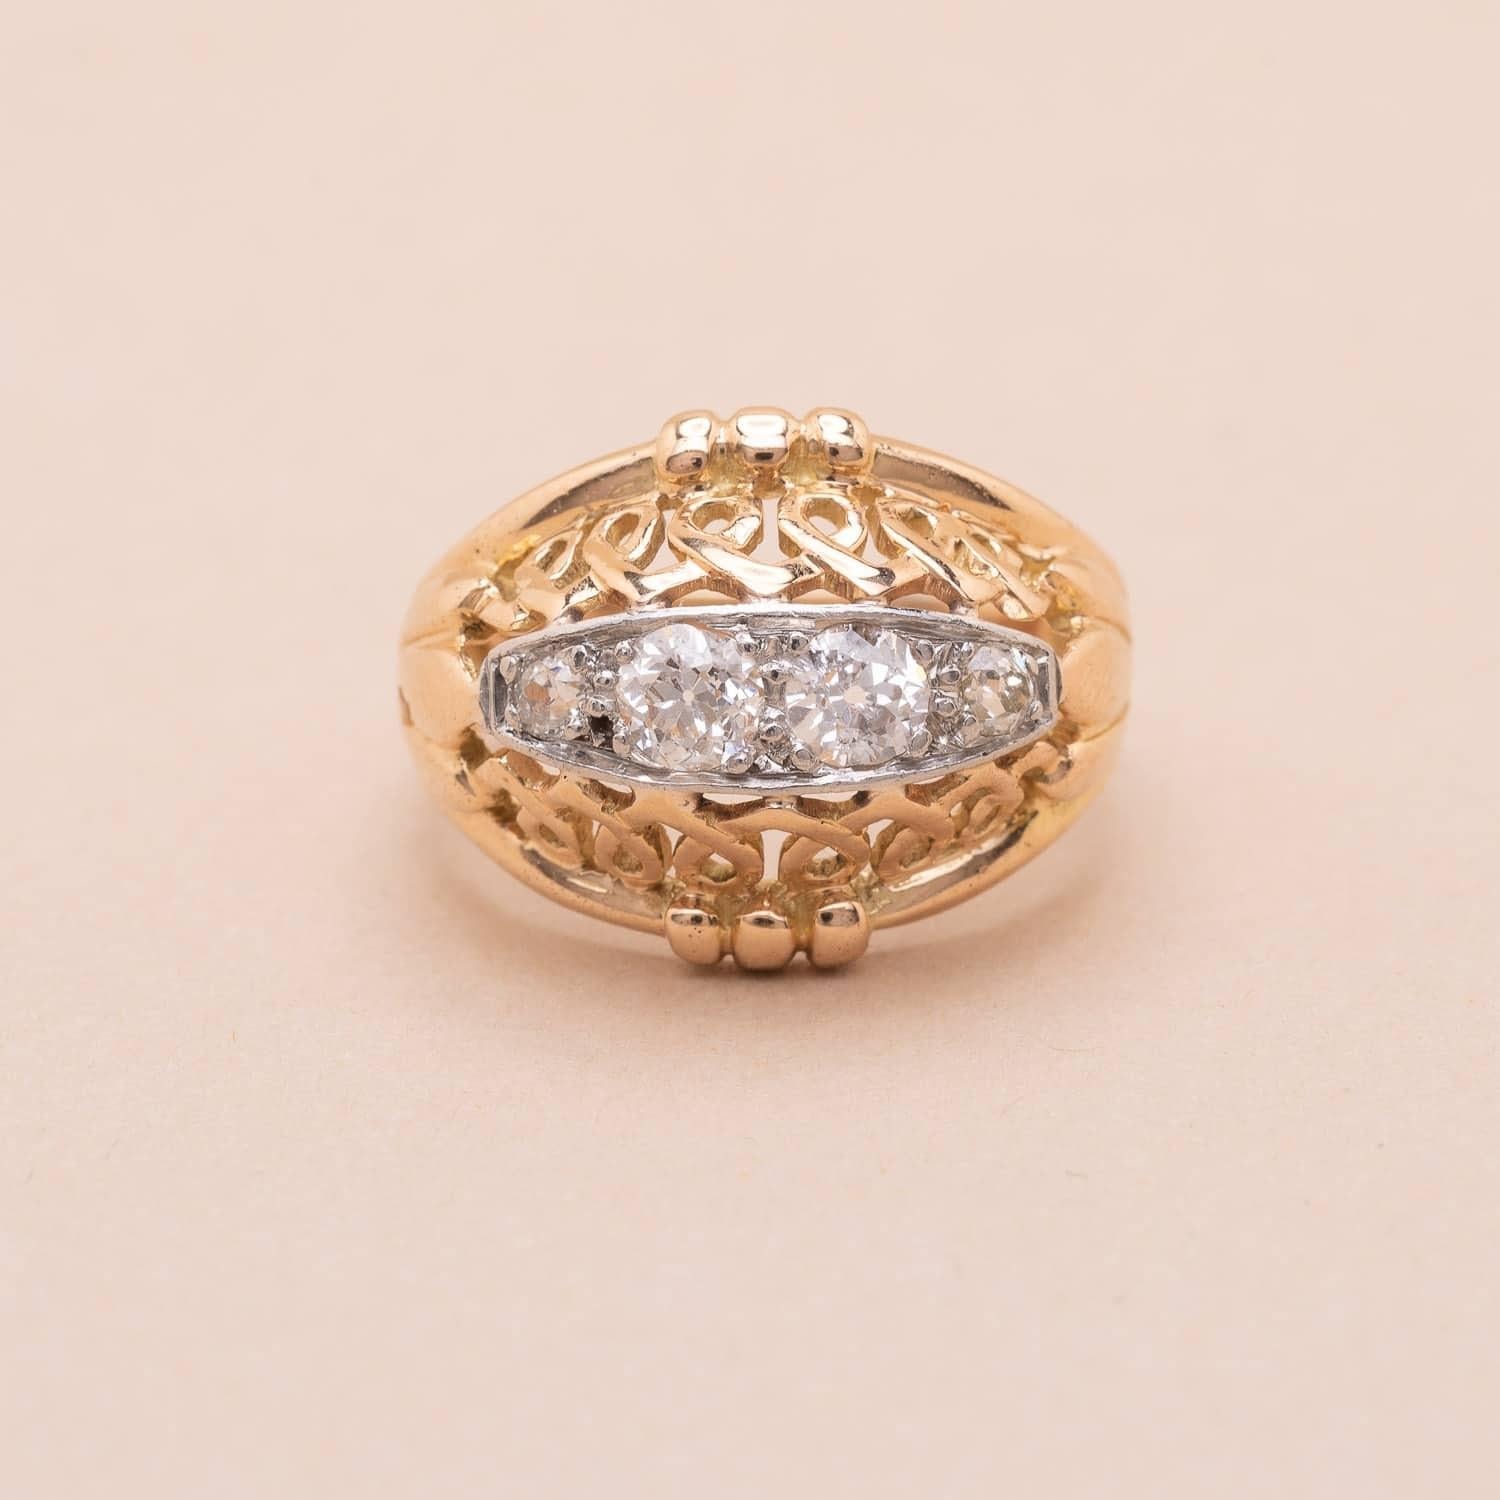 Vintage 18K (750°/00) Gold und Platin (950°/00), besetzt mit 3 runden Diamanten im Altschliff. Dieser wunderschöne Ring ist von der Jarretière inspiriert, einer klassischen und eleganten Form, die typisch für den französischen Schmuck der 40er Jahre